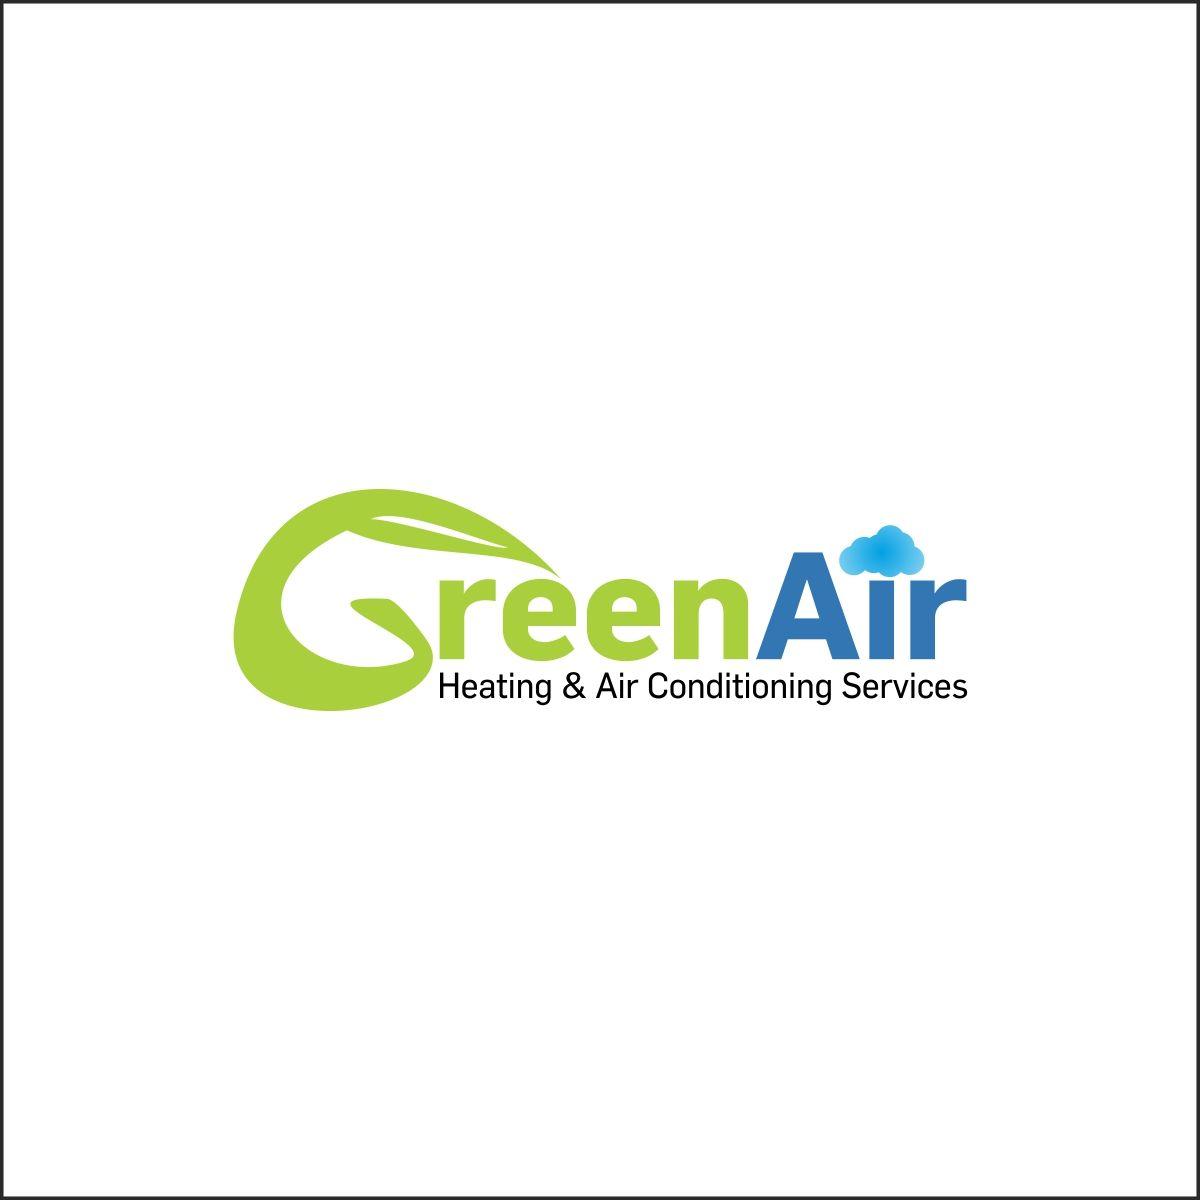 Green Air Logo - Bold, Serious, Hvac Logo Design for Green Air, Heating & Air